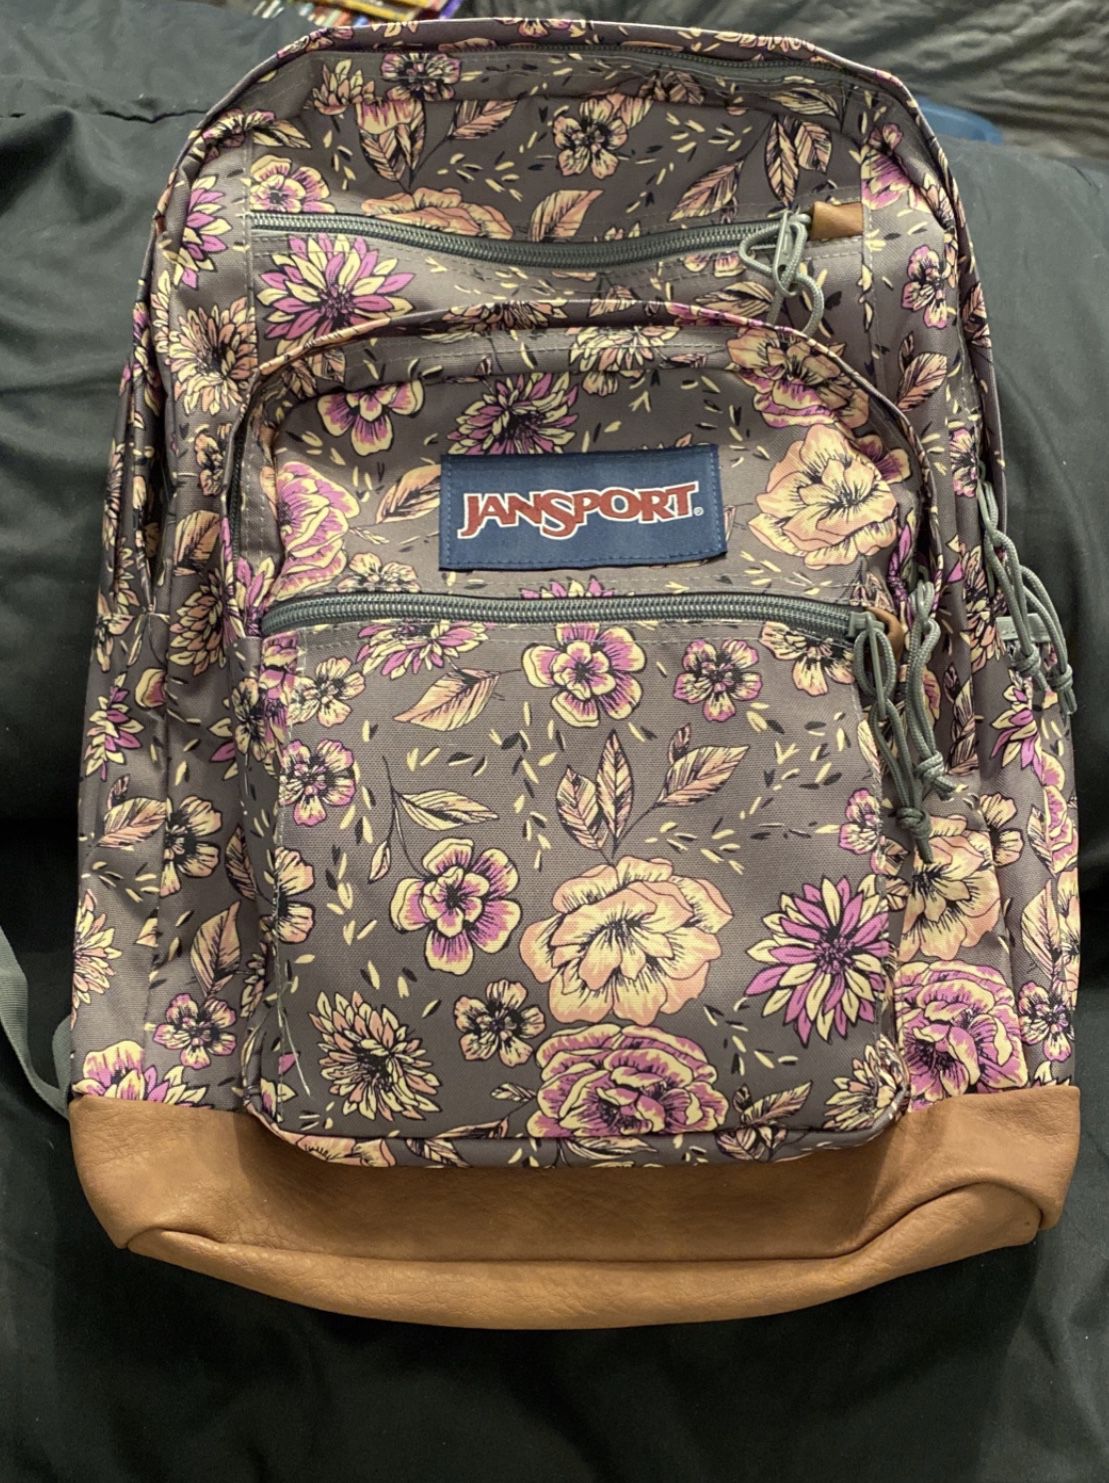 JanSport Big Student Boho Grey Floral Backpack